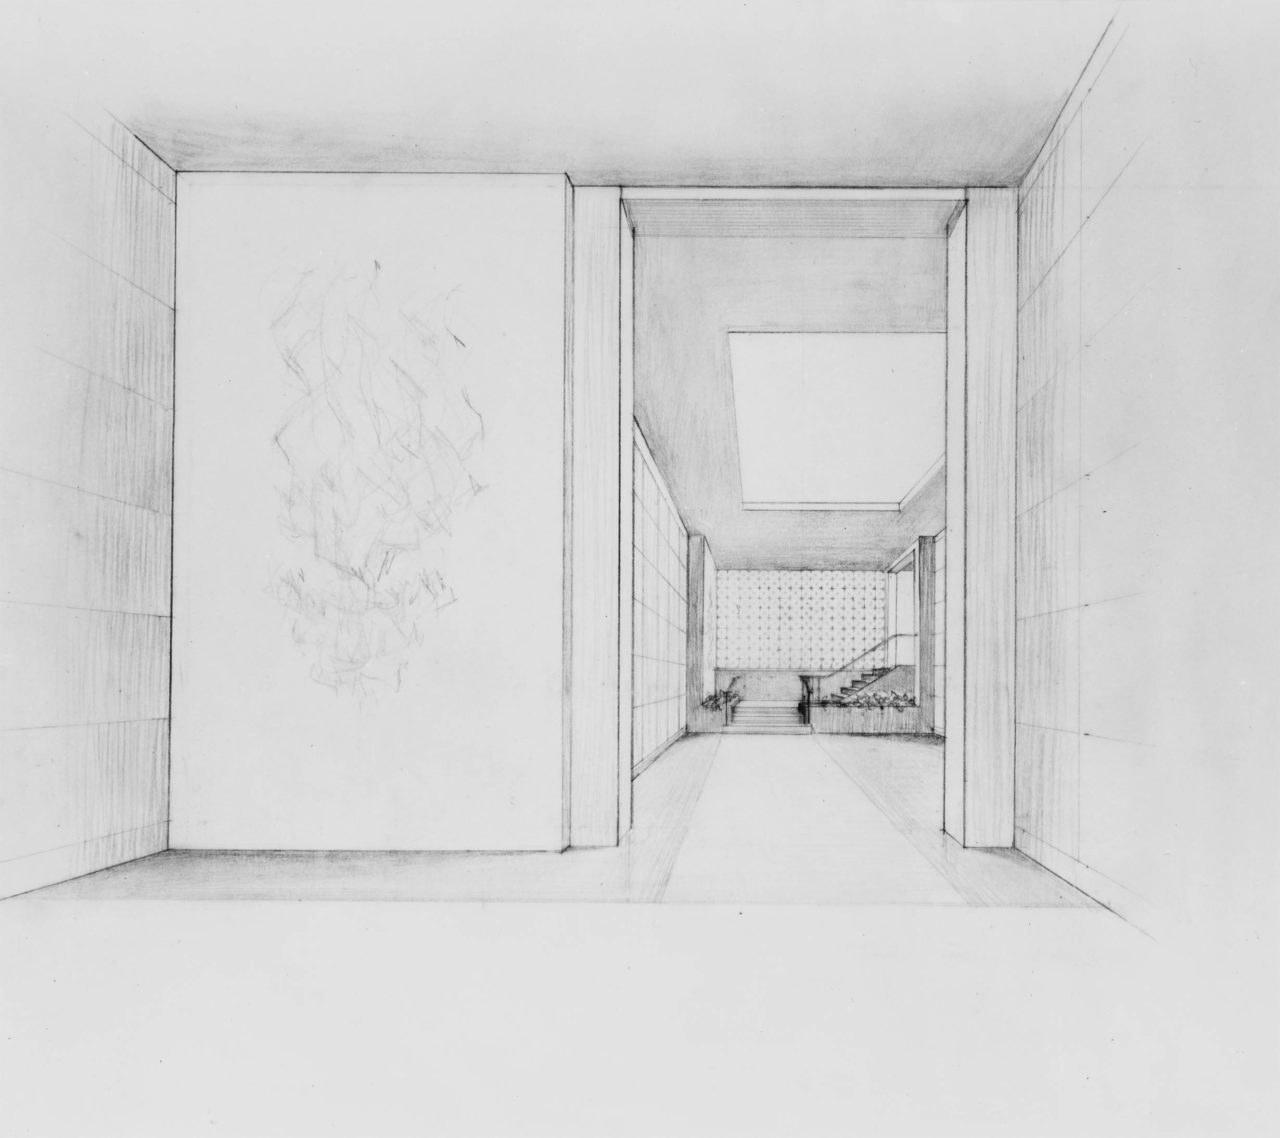 Sketch for the interior of a mausoleum complex